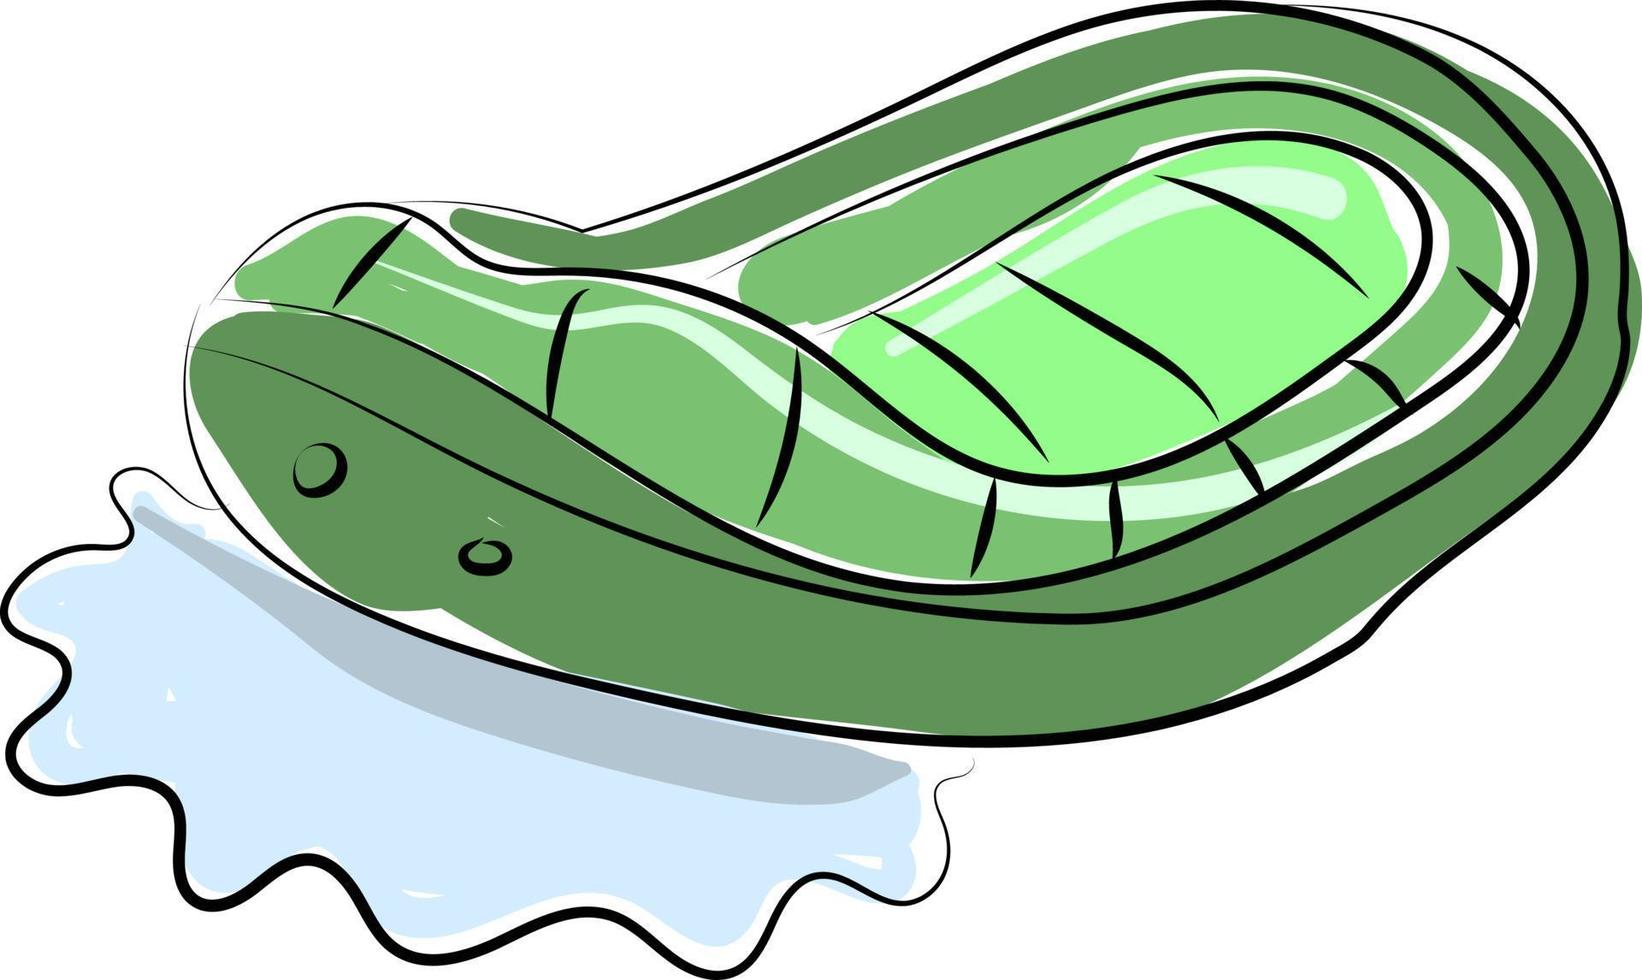 grünes Boot, Illustration, Vektor auf weißem Hintergrund.